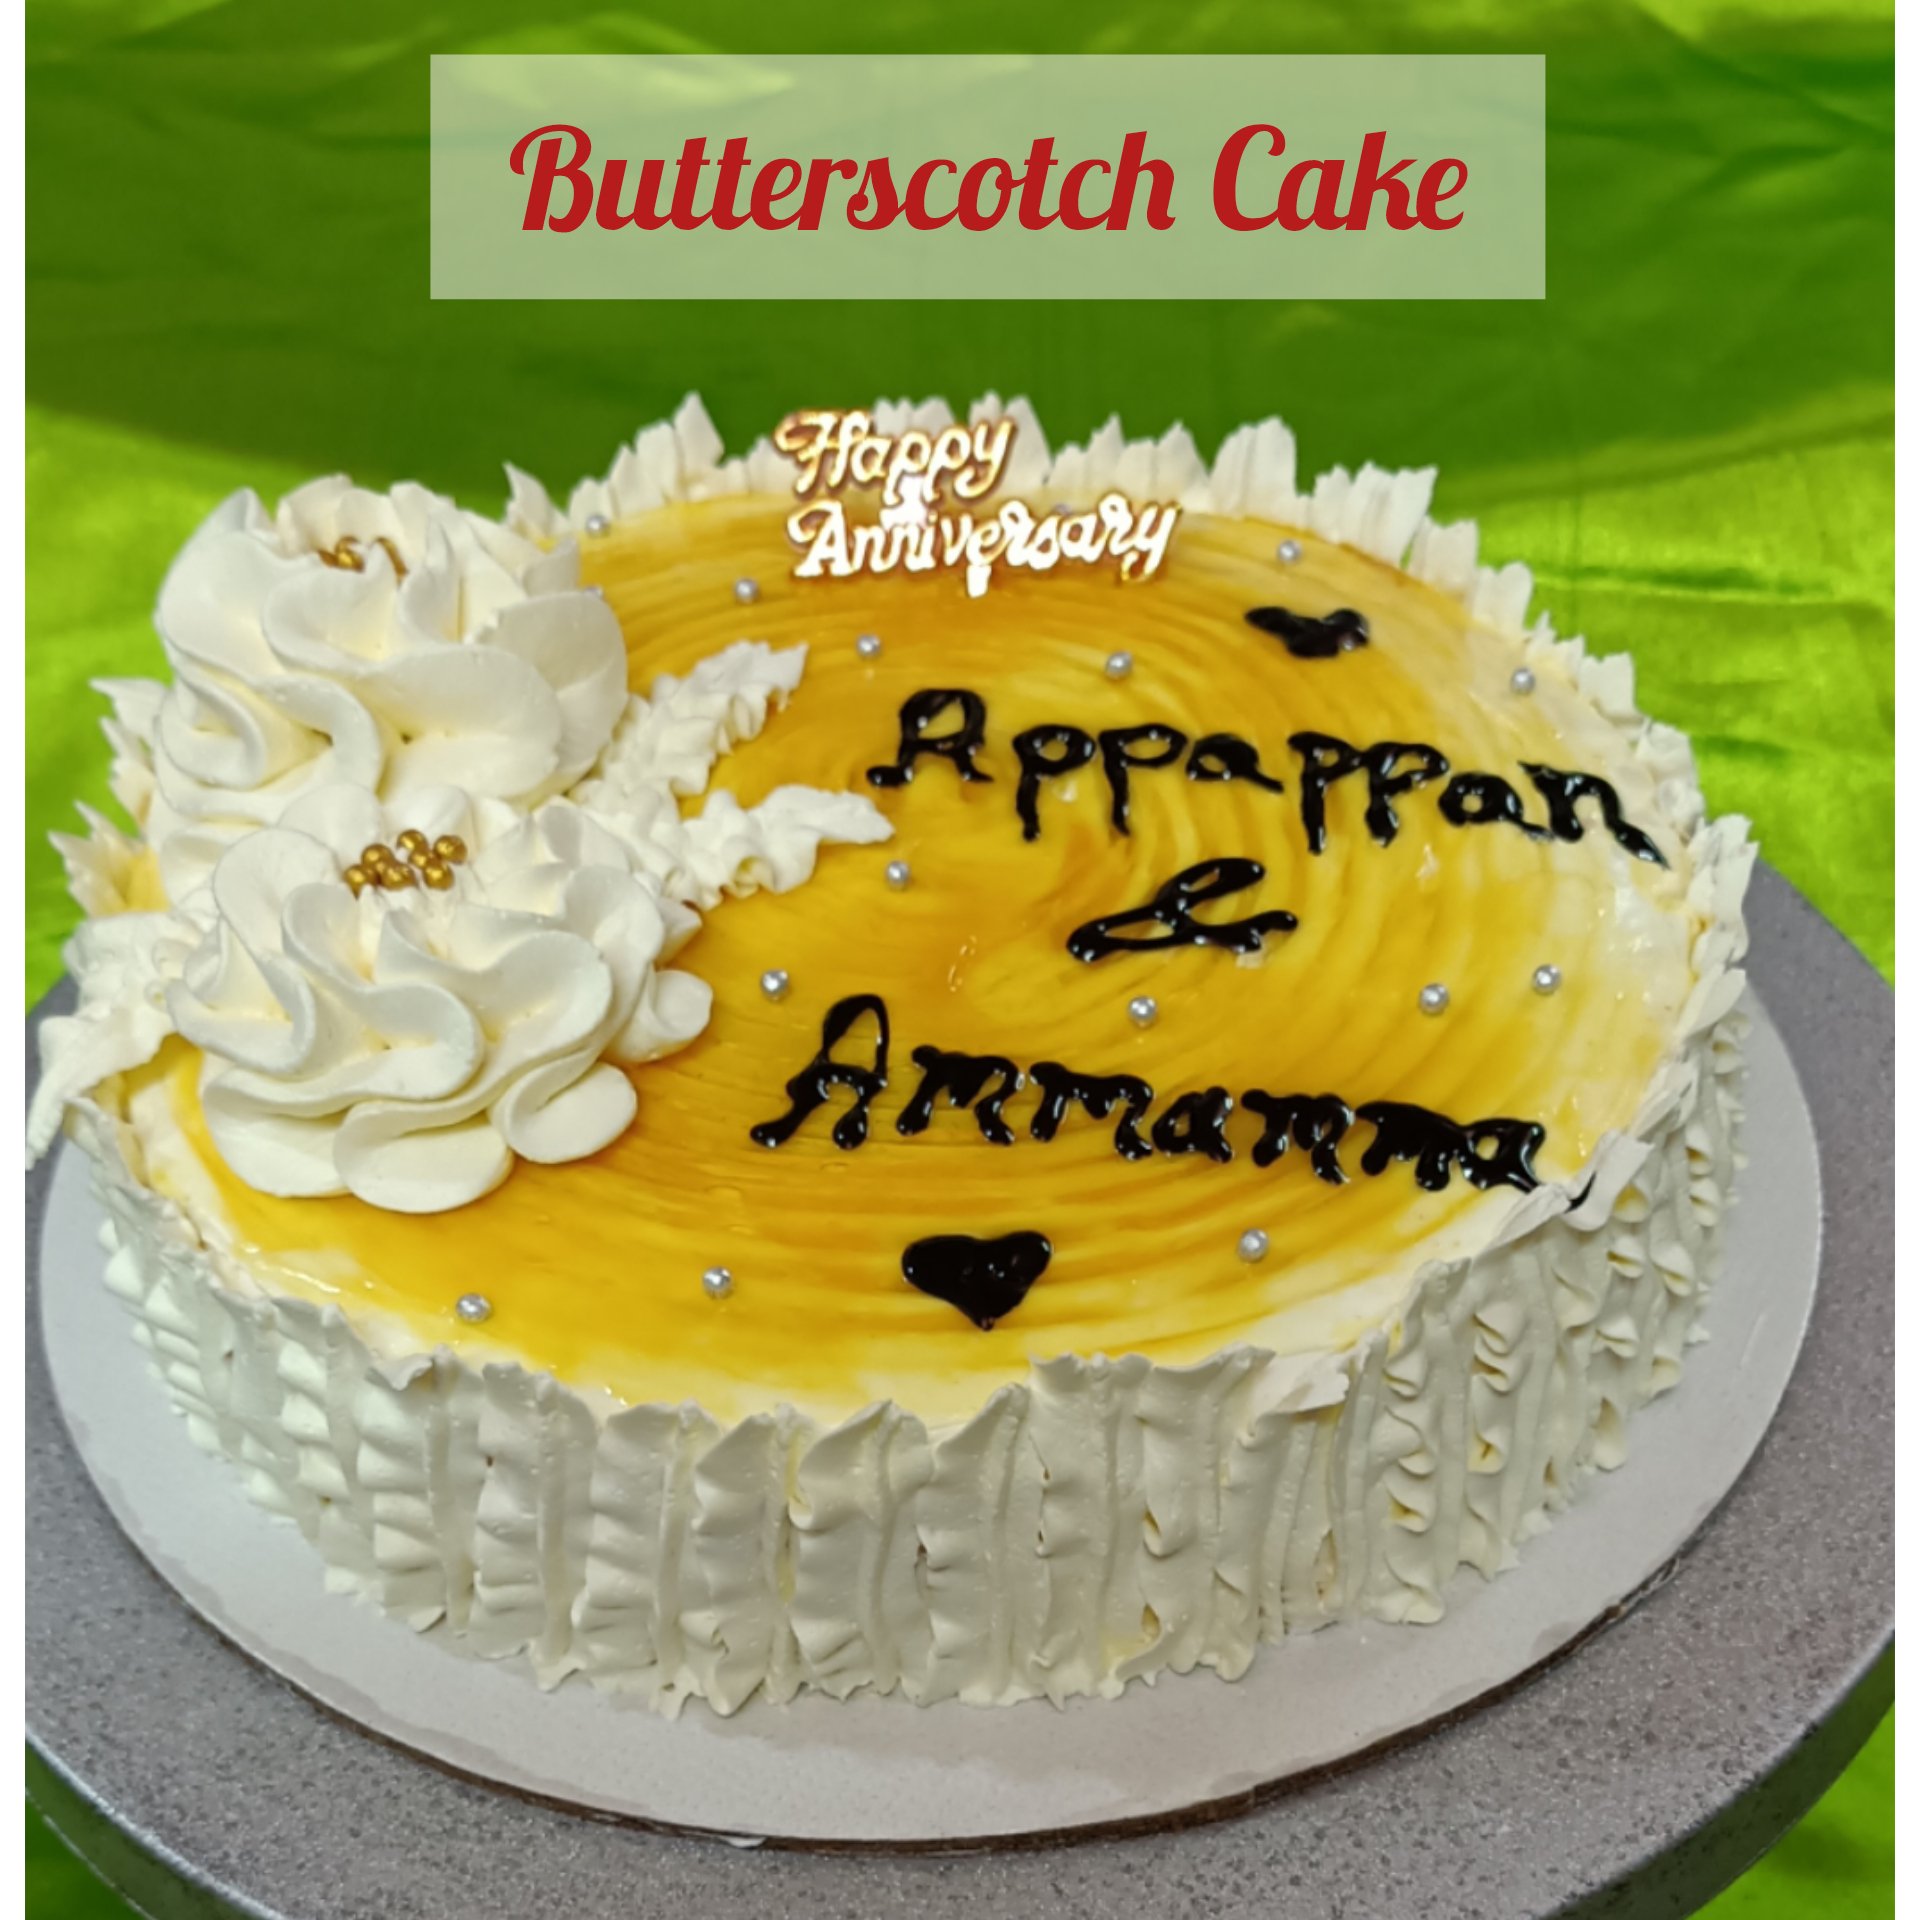 Birthday Normal Cake 002 - 1 KgBirthday Normal Cake 002 - 1 Kg-hancorp34.com.vn